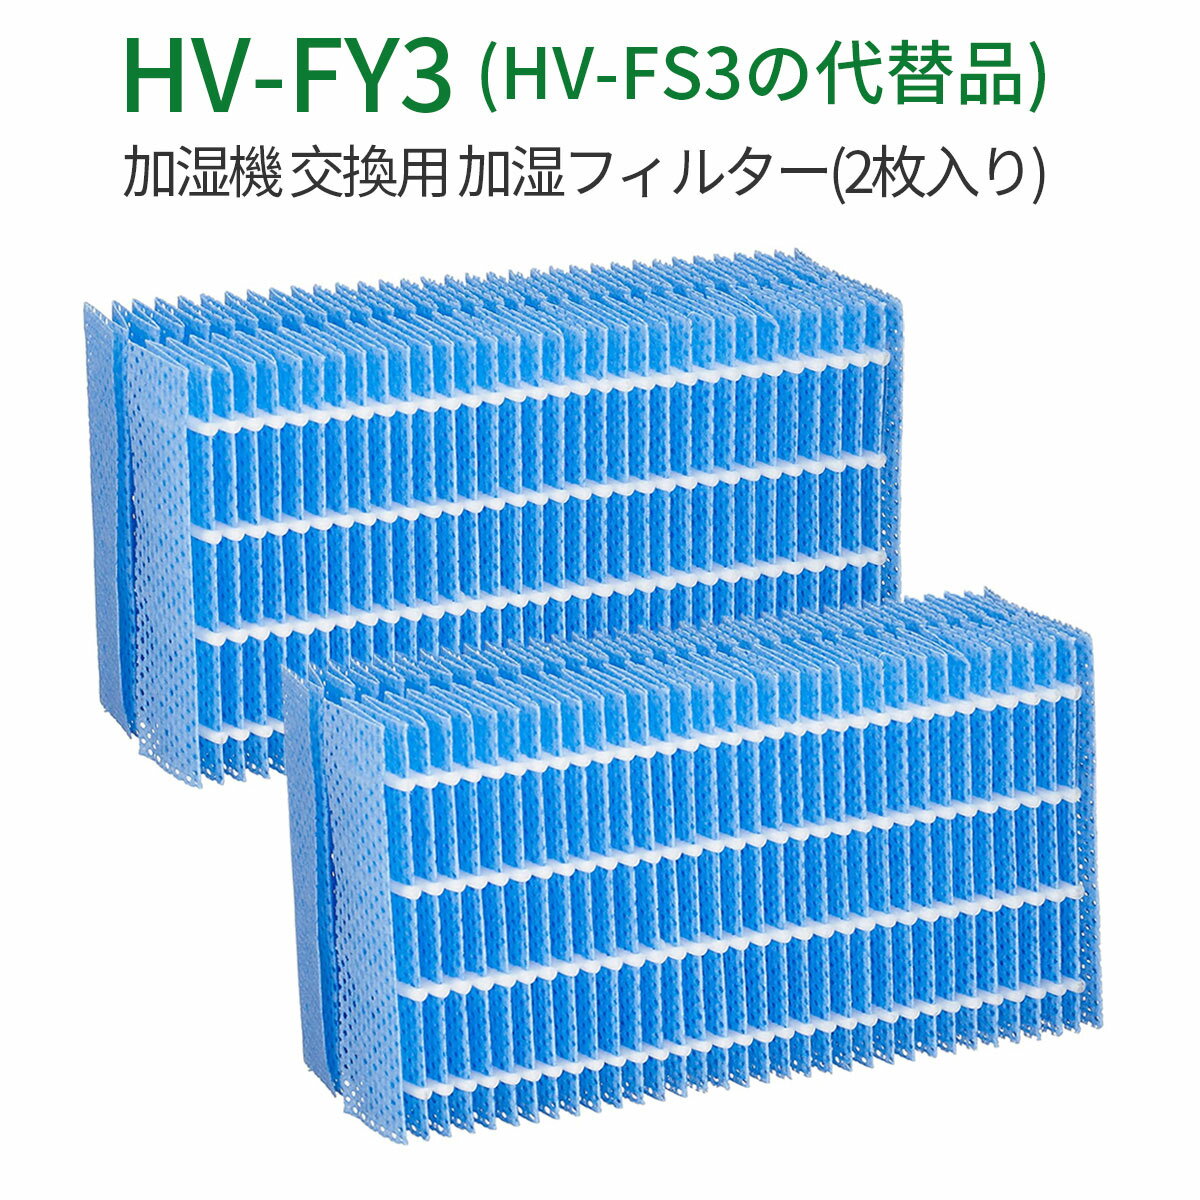 シャープ 気化式加湿器 HV-FY3 加湿フィルター シャープ 加湿器 フィルター hv-fy3 HV-FS3の代替品 気化式加湿機用 交換フィルター (互換品/2枚入り)